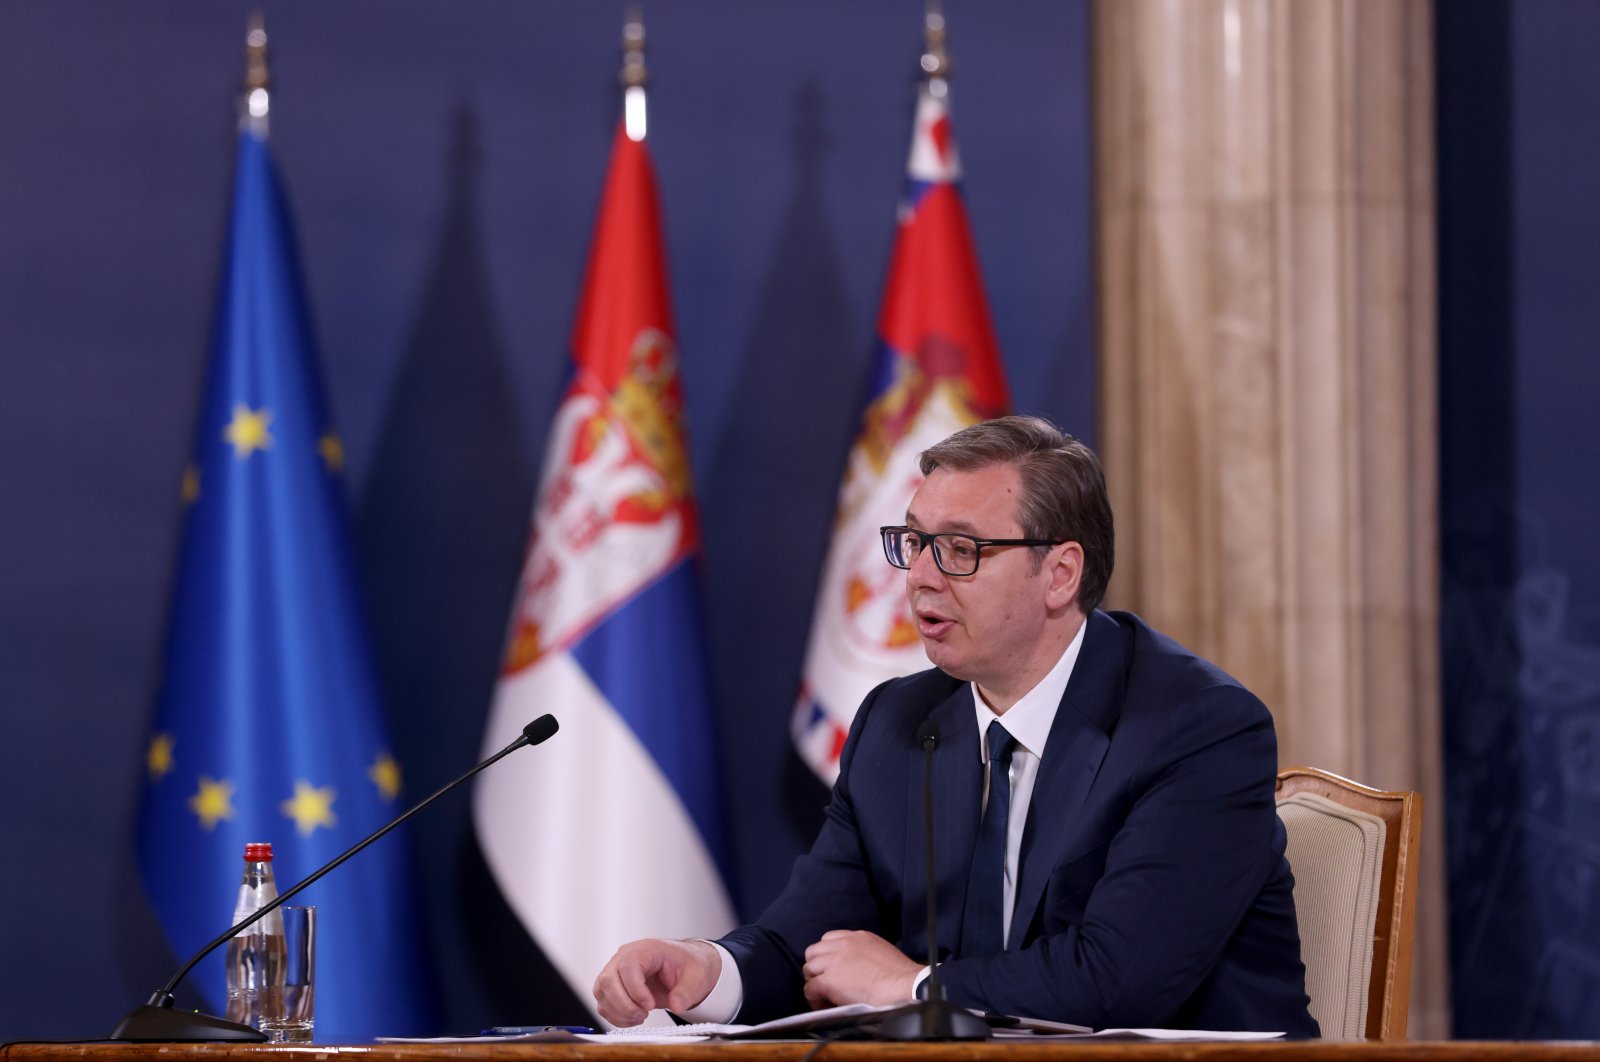 Serbia untuk mengubah kebijakan luar negeri setelah keputusan Uni Eropa Kosovo: Vucic